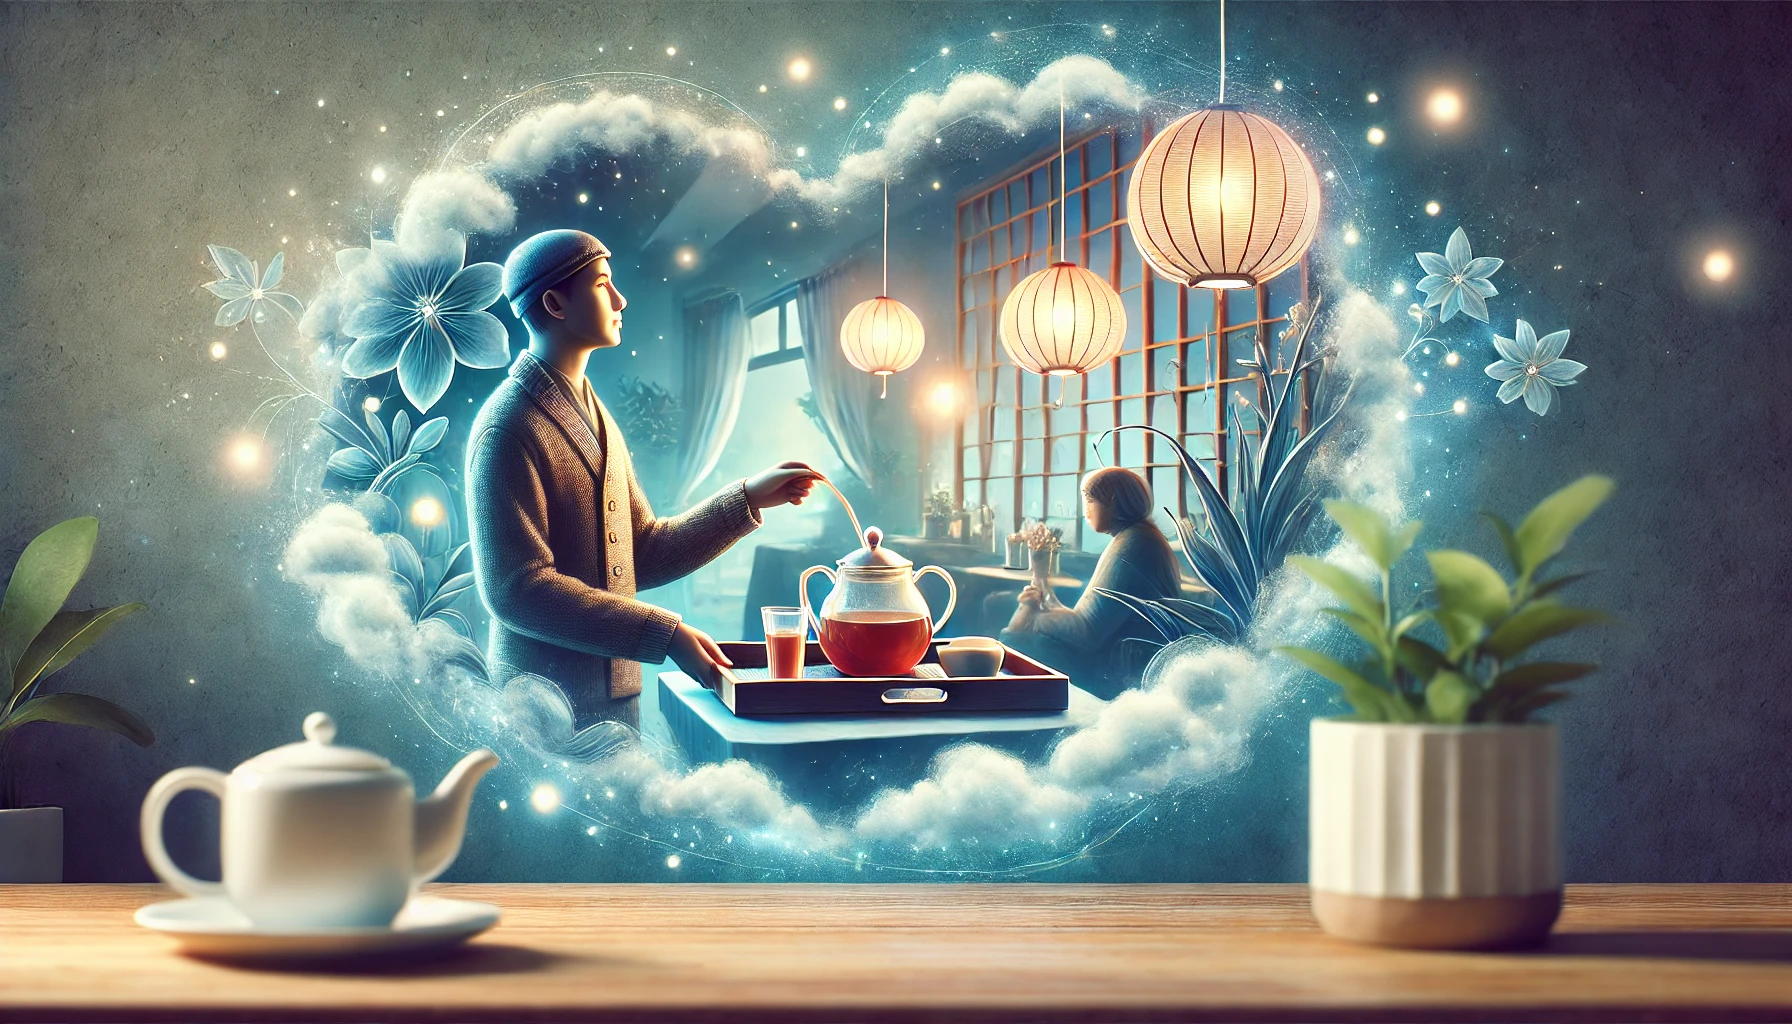 Rüyada Çaycı Görmek | Çaycı Olmak | Çay Makinesi Görmek Ne Demektir?